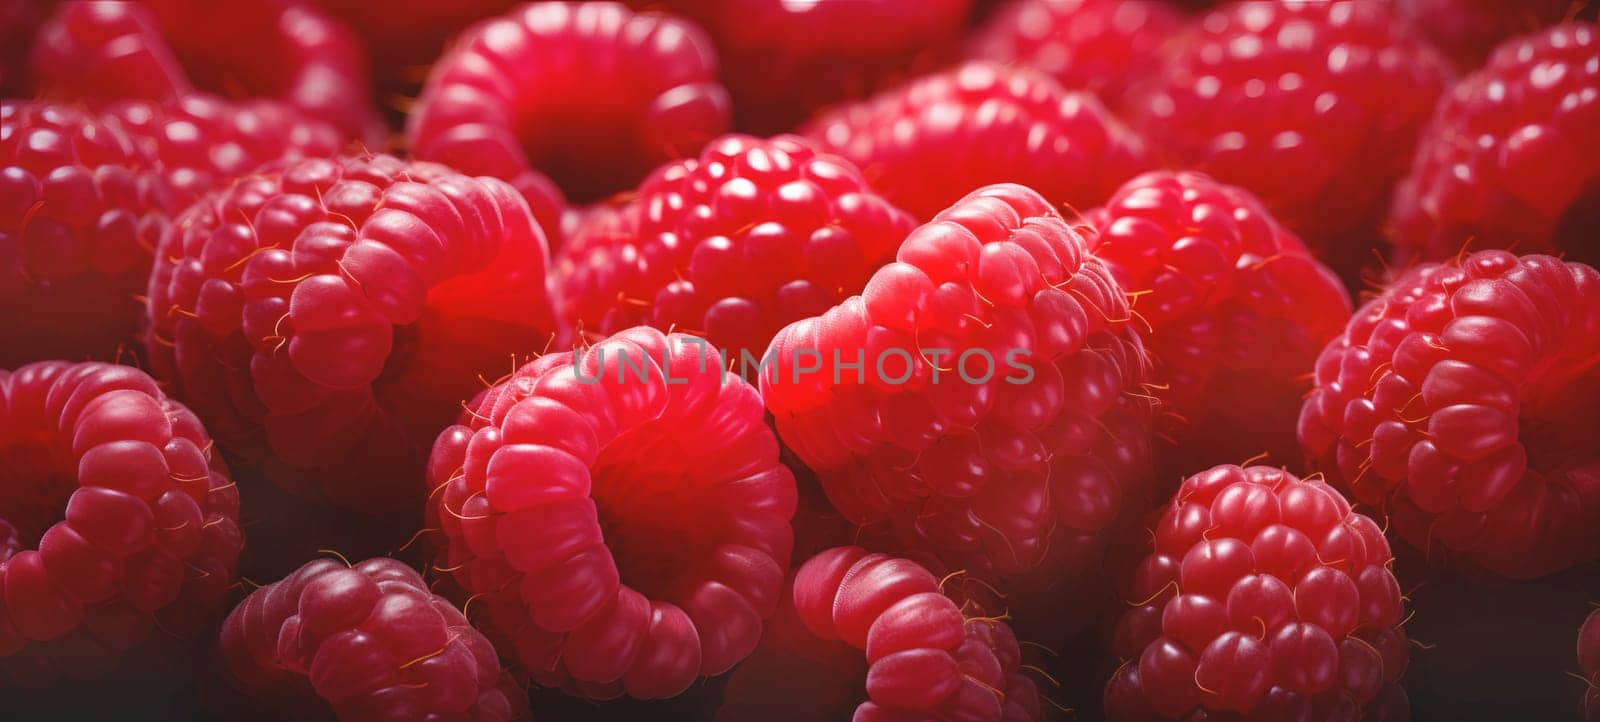 fruit banner from the harvest of ripe organic raspberries.